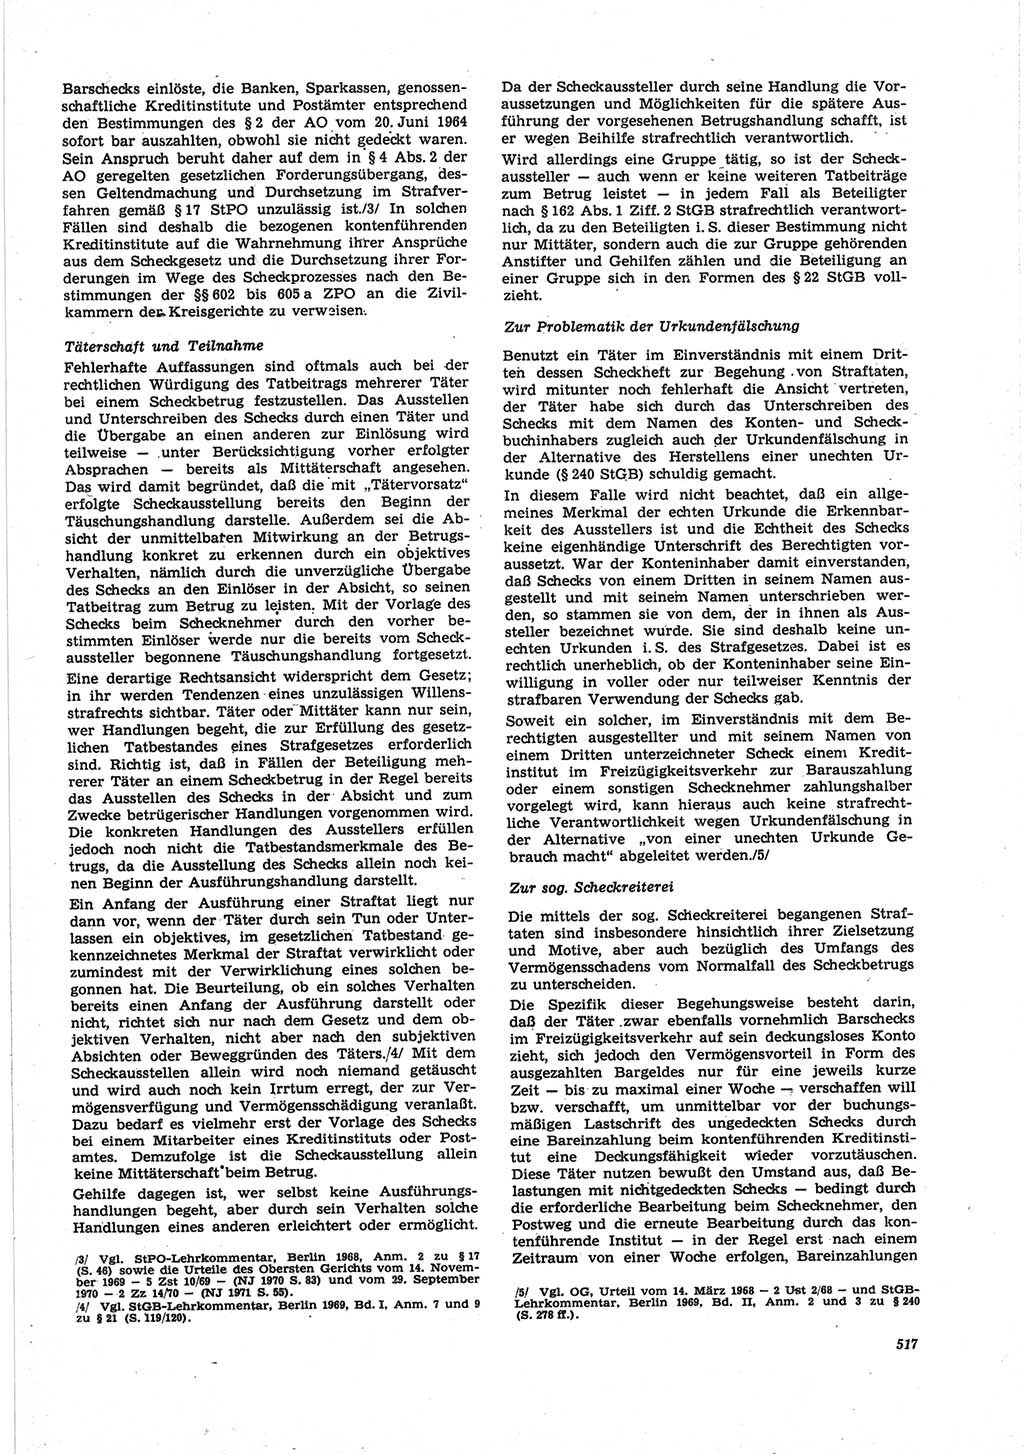 Neue Justiz (NJ), Zeitschrift für Recht und Rechtswissenschaft [Deutsche Demokratische Republik (DDR)], 25. Jahrgang 1971, Seite 517 (NJ DDR 1971, S. 517)